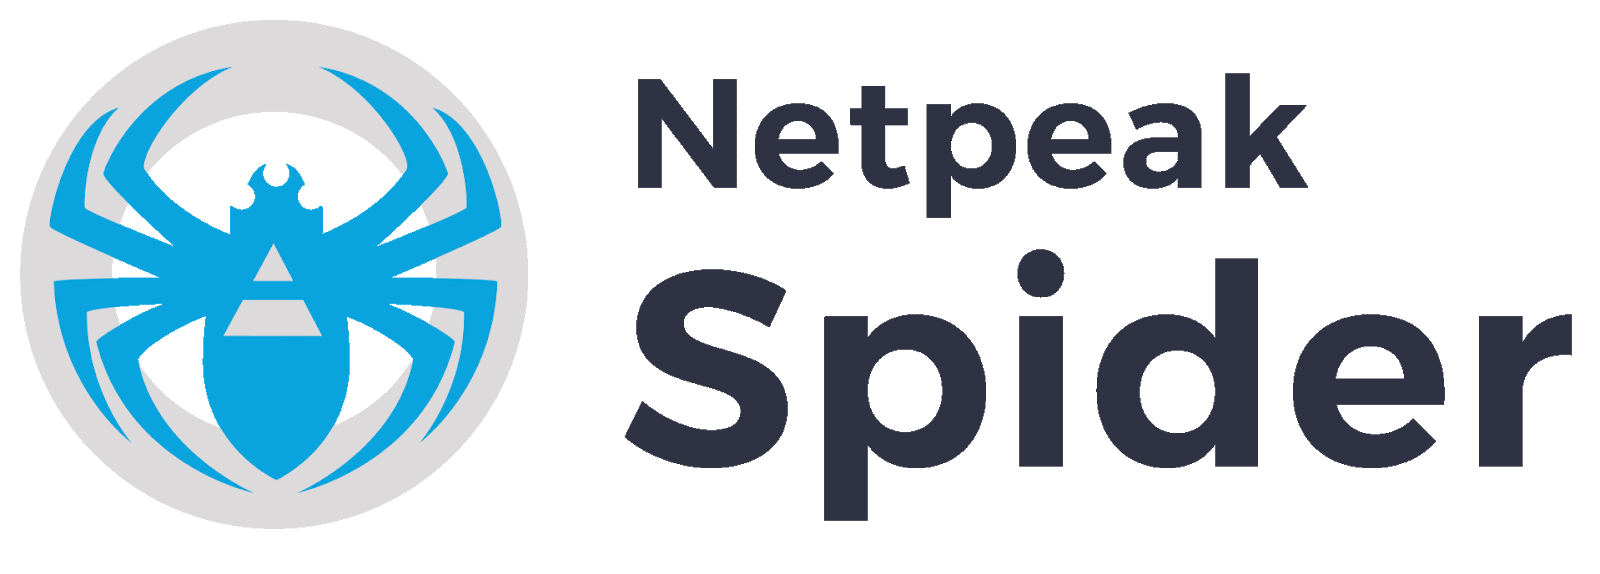 Netpeak-Spider